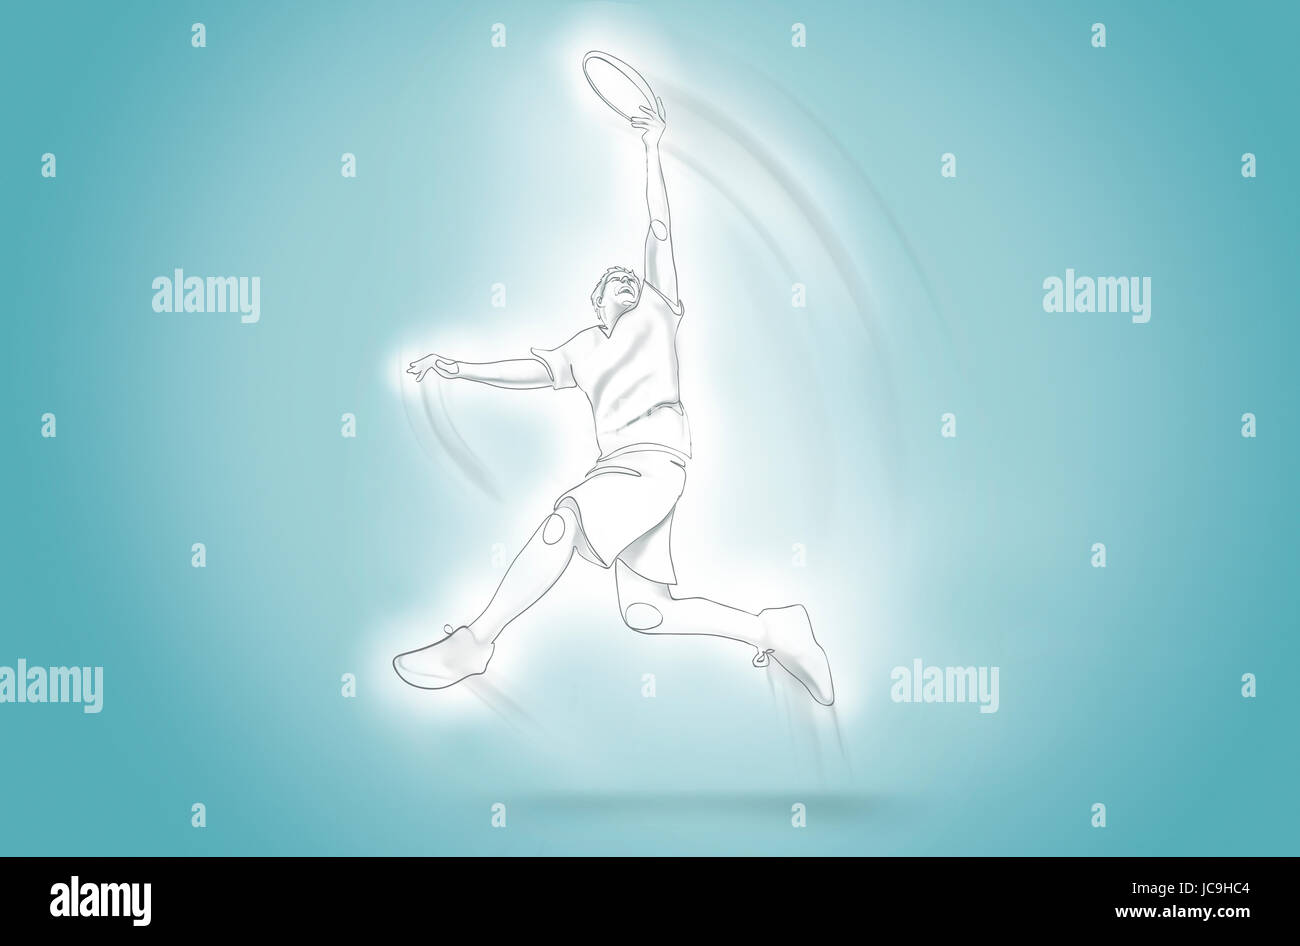 Les captures de saut homme frisbee - une ligne art Banque D'Images